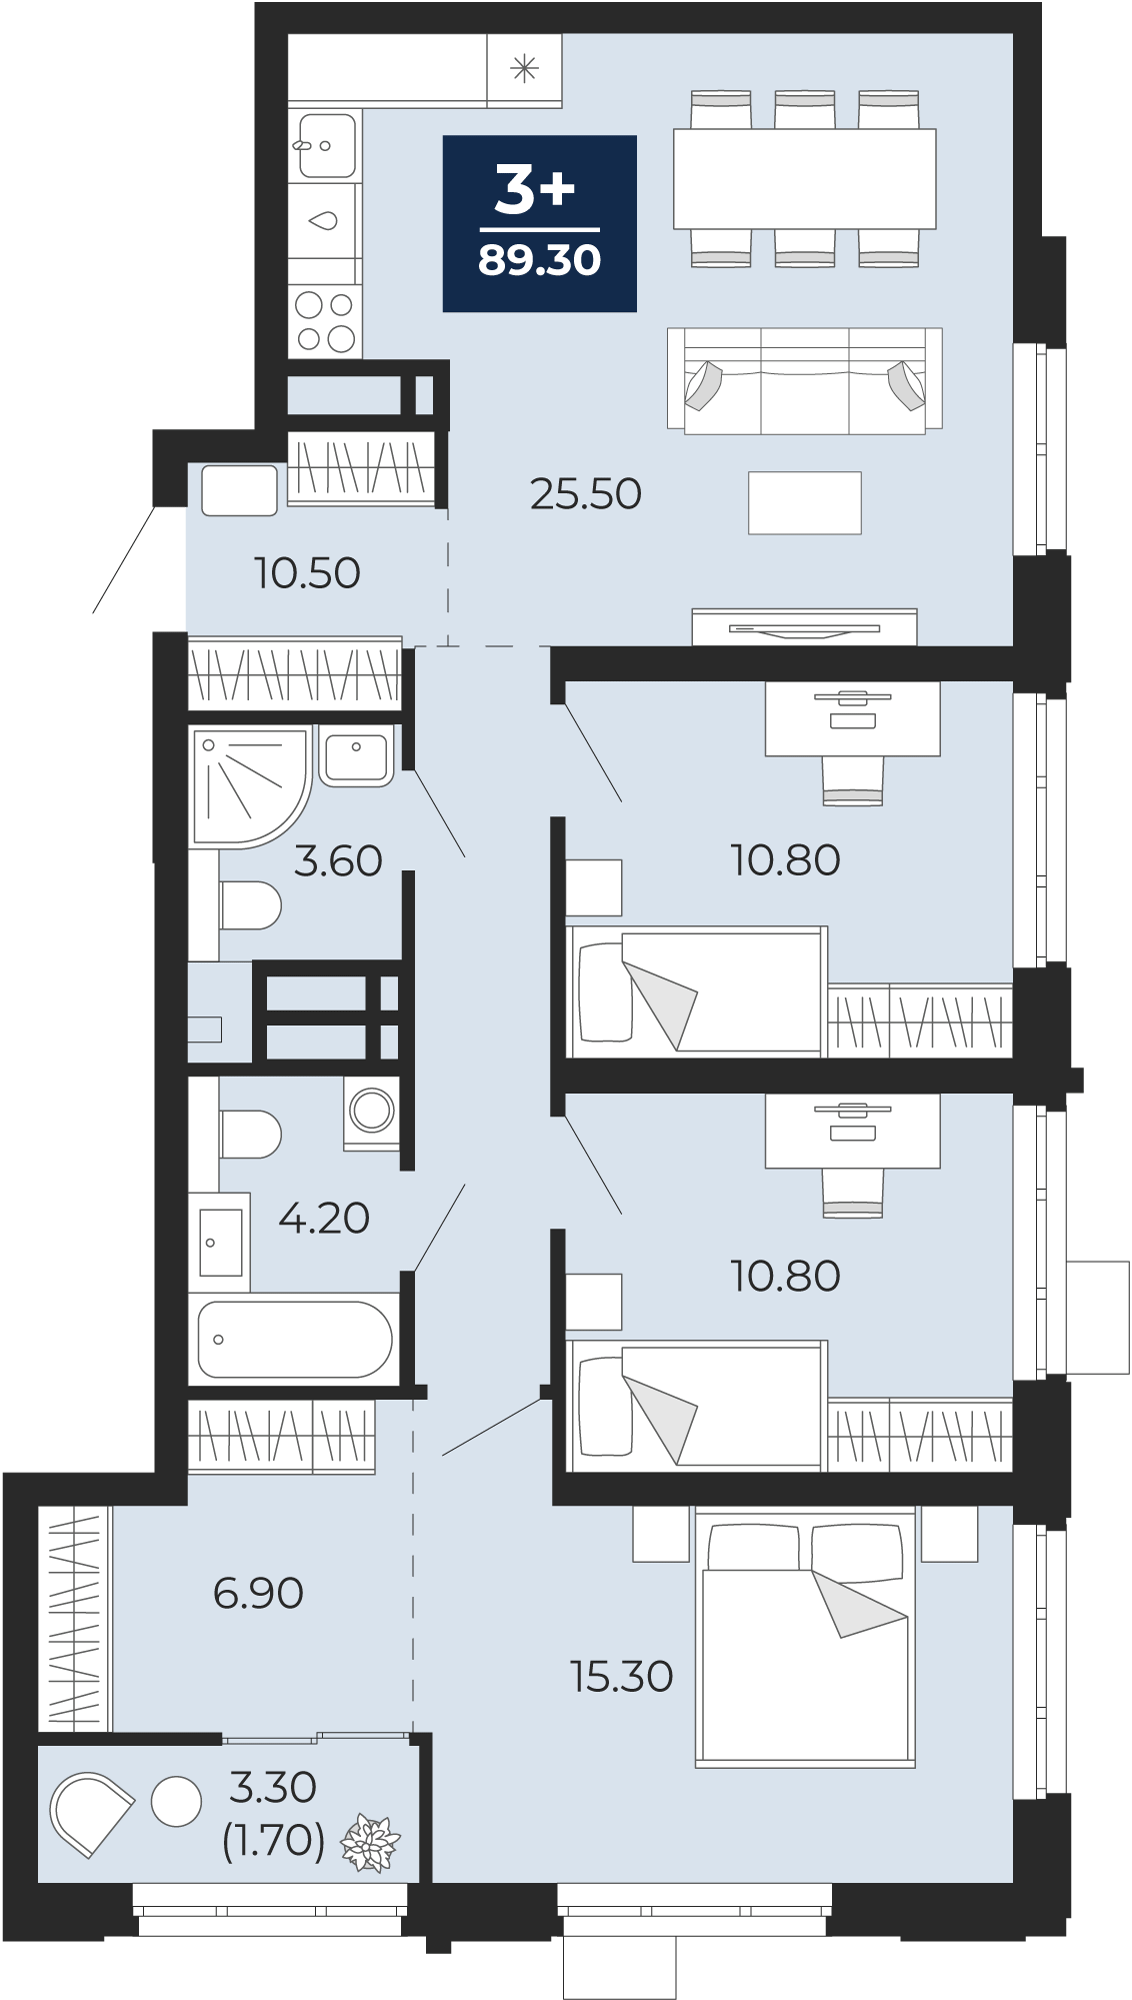 Квартира № 145, 3-комнатная, 89.3 кв. м, 9 этаж